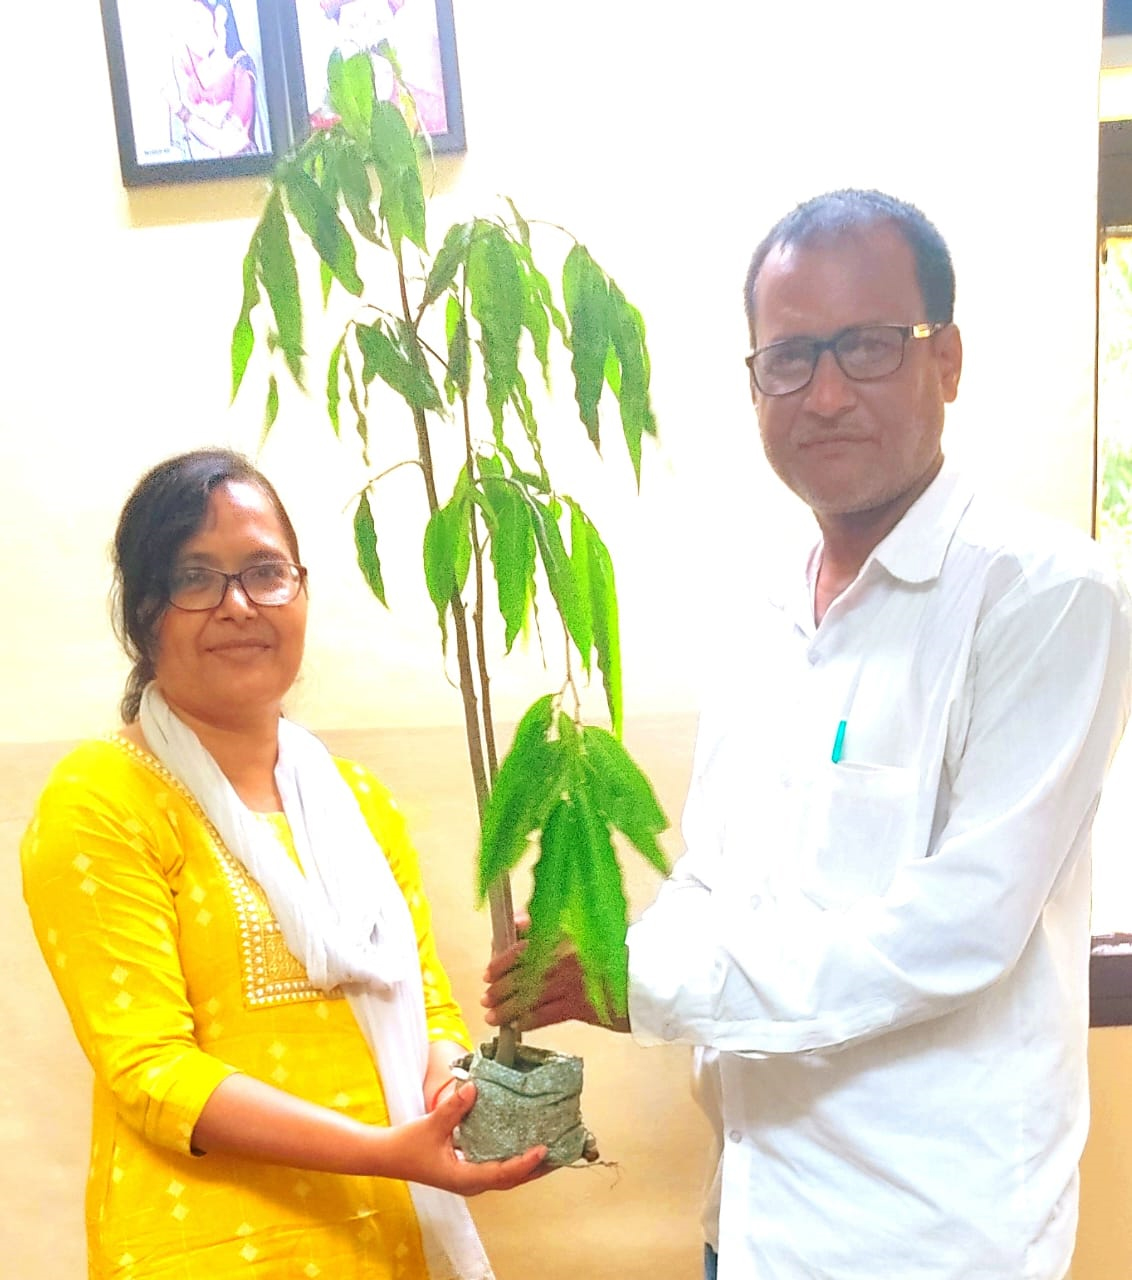  इंडोरामा जन सेवा ट्रस्ट हास्पिटल की वरिष्ठ चिकित्सक डा पूनम पटेल ने संस्था प्रबंधक को भेंट किया पौधे